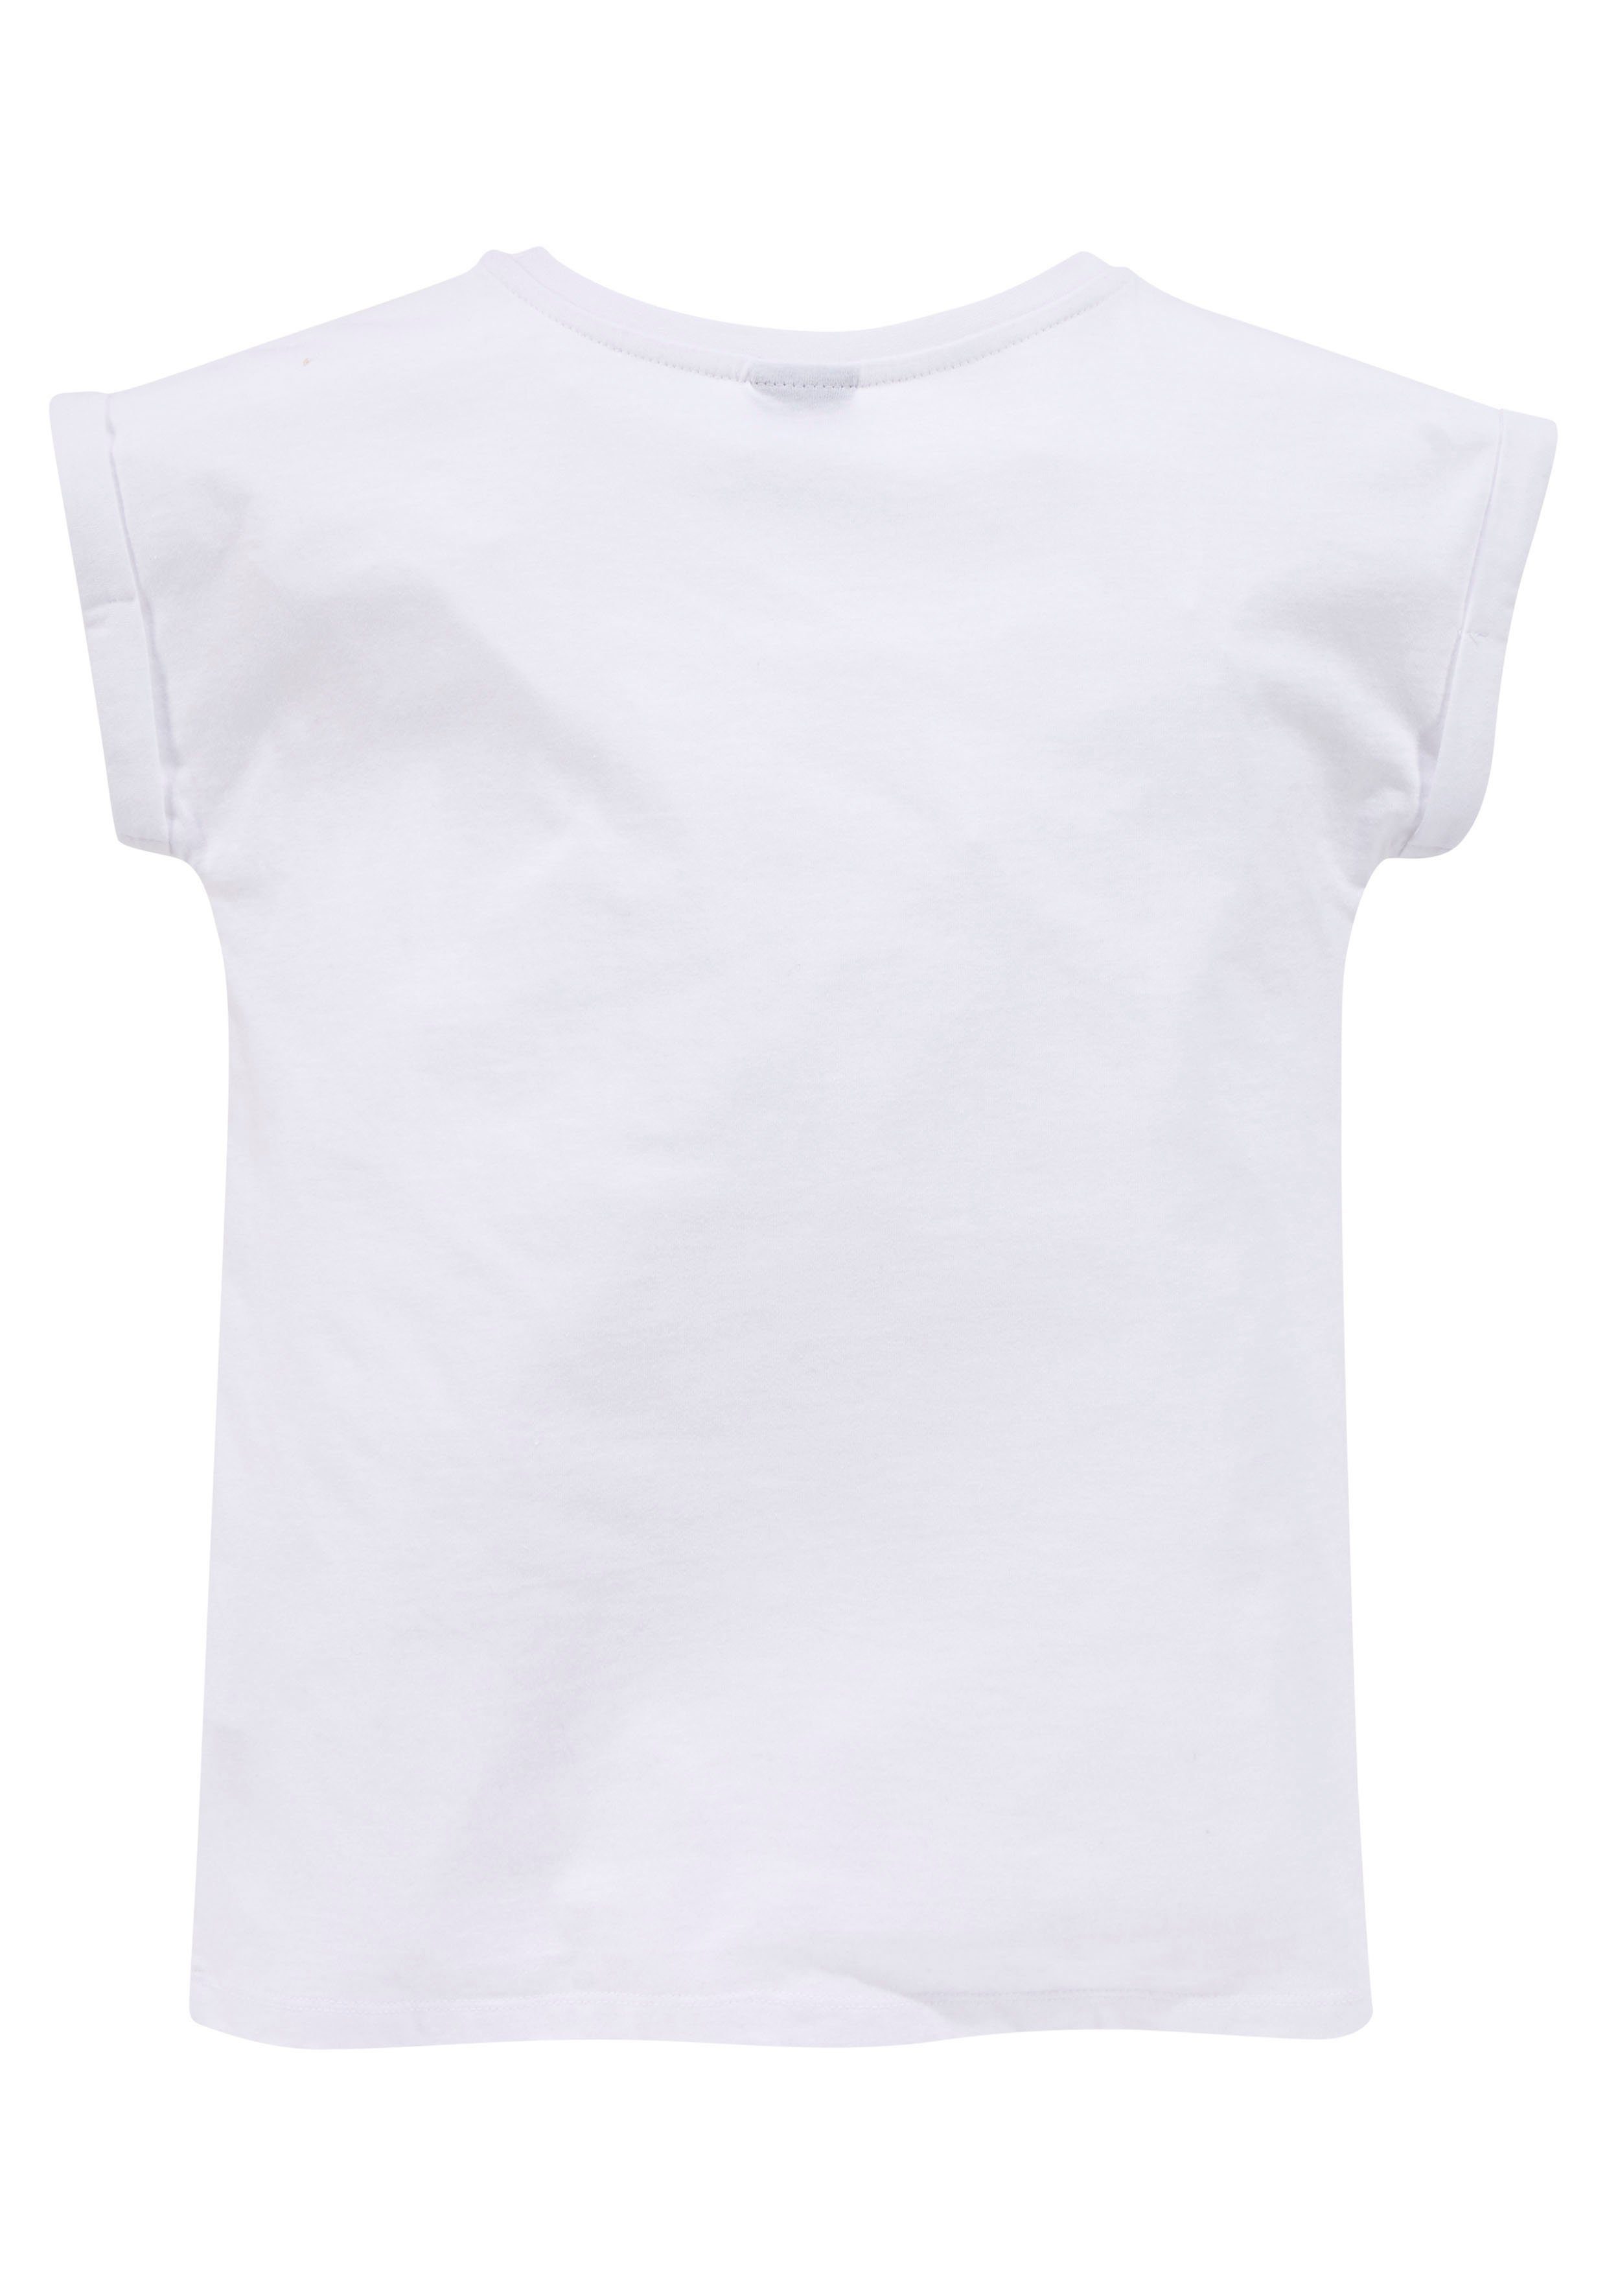 KIDSWORLD T-Shirt NOT YOUR Ärmelaufschlag mit legere Form ERNST kleinem